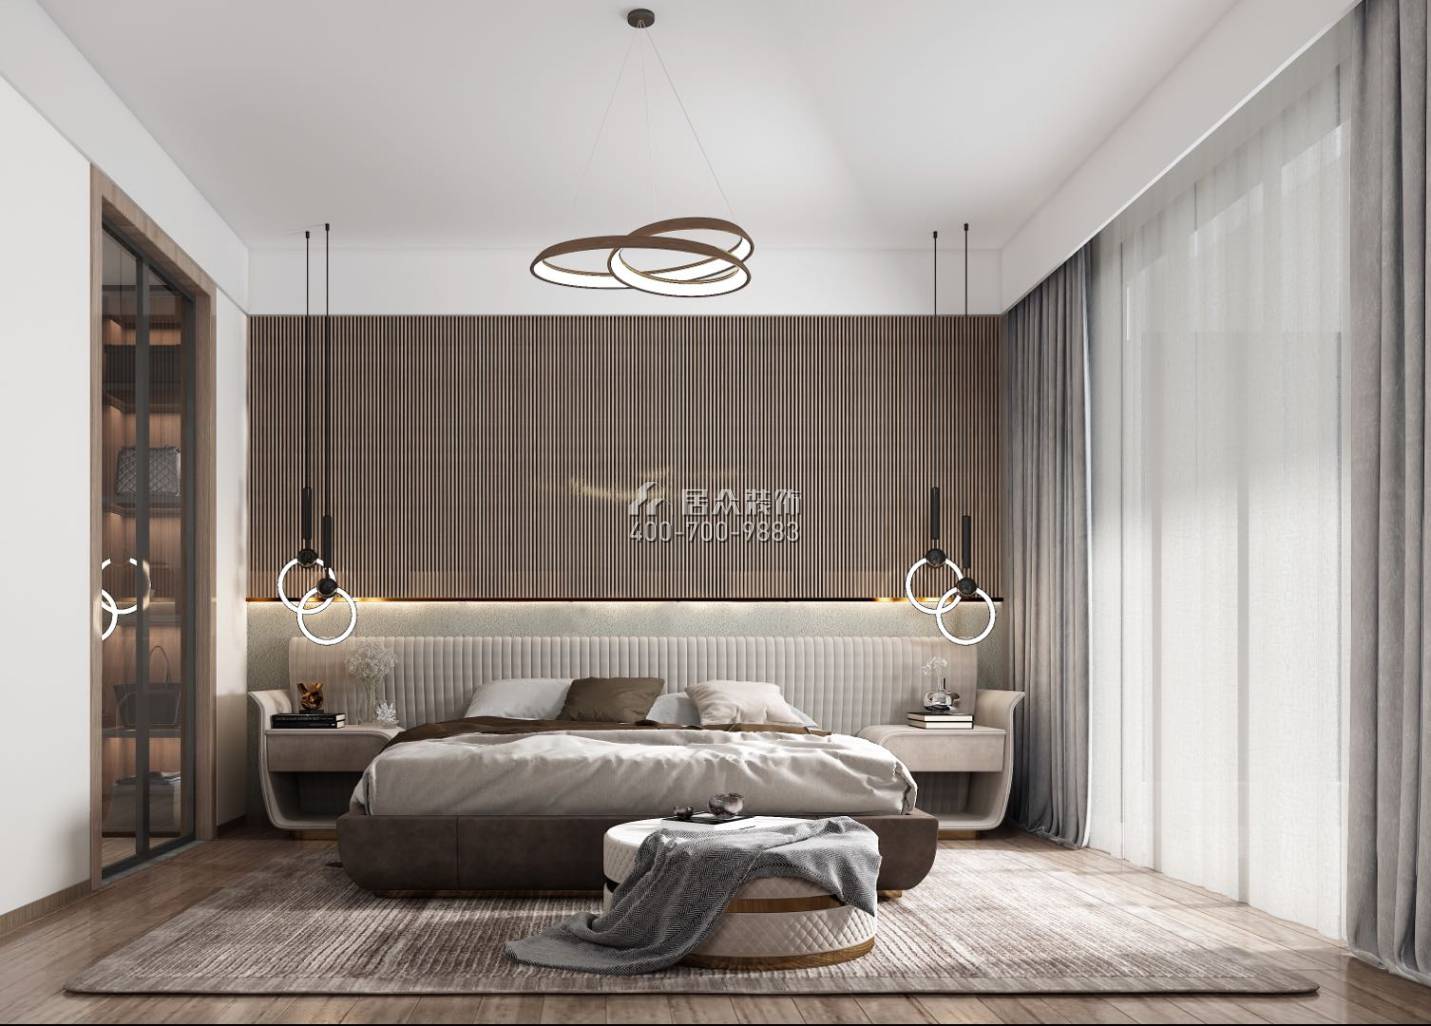 翠湖香山別苑238平方米現代簡約風格復式戶型臥室裝修效果圖